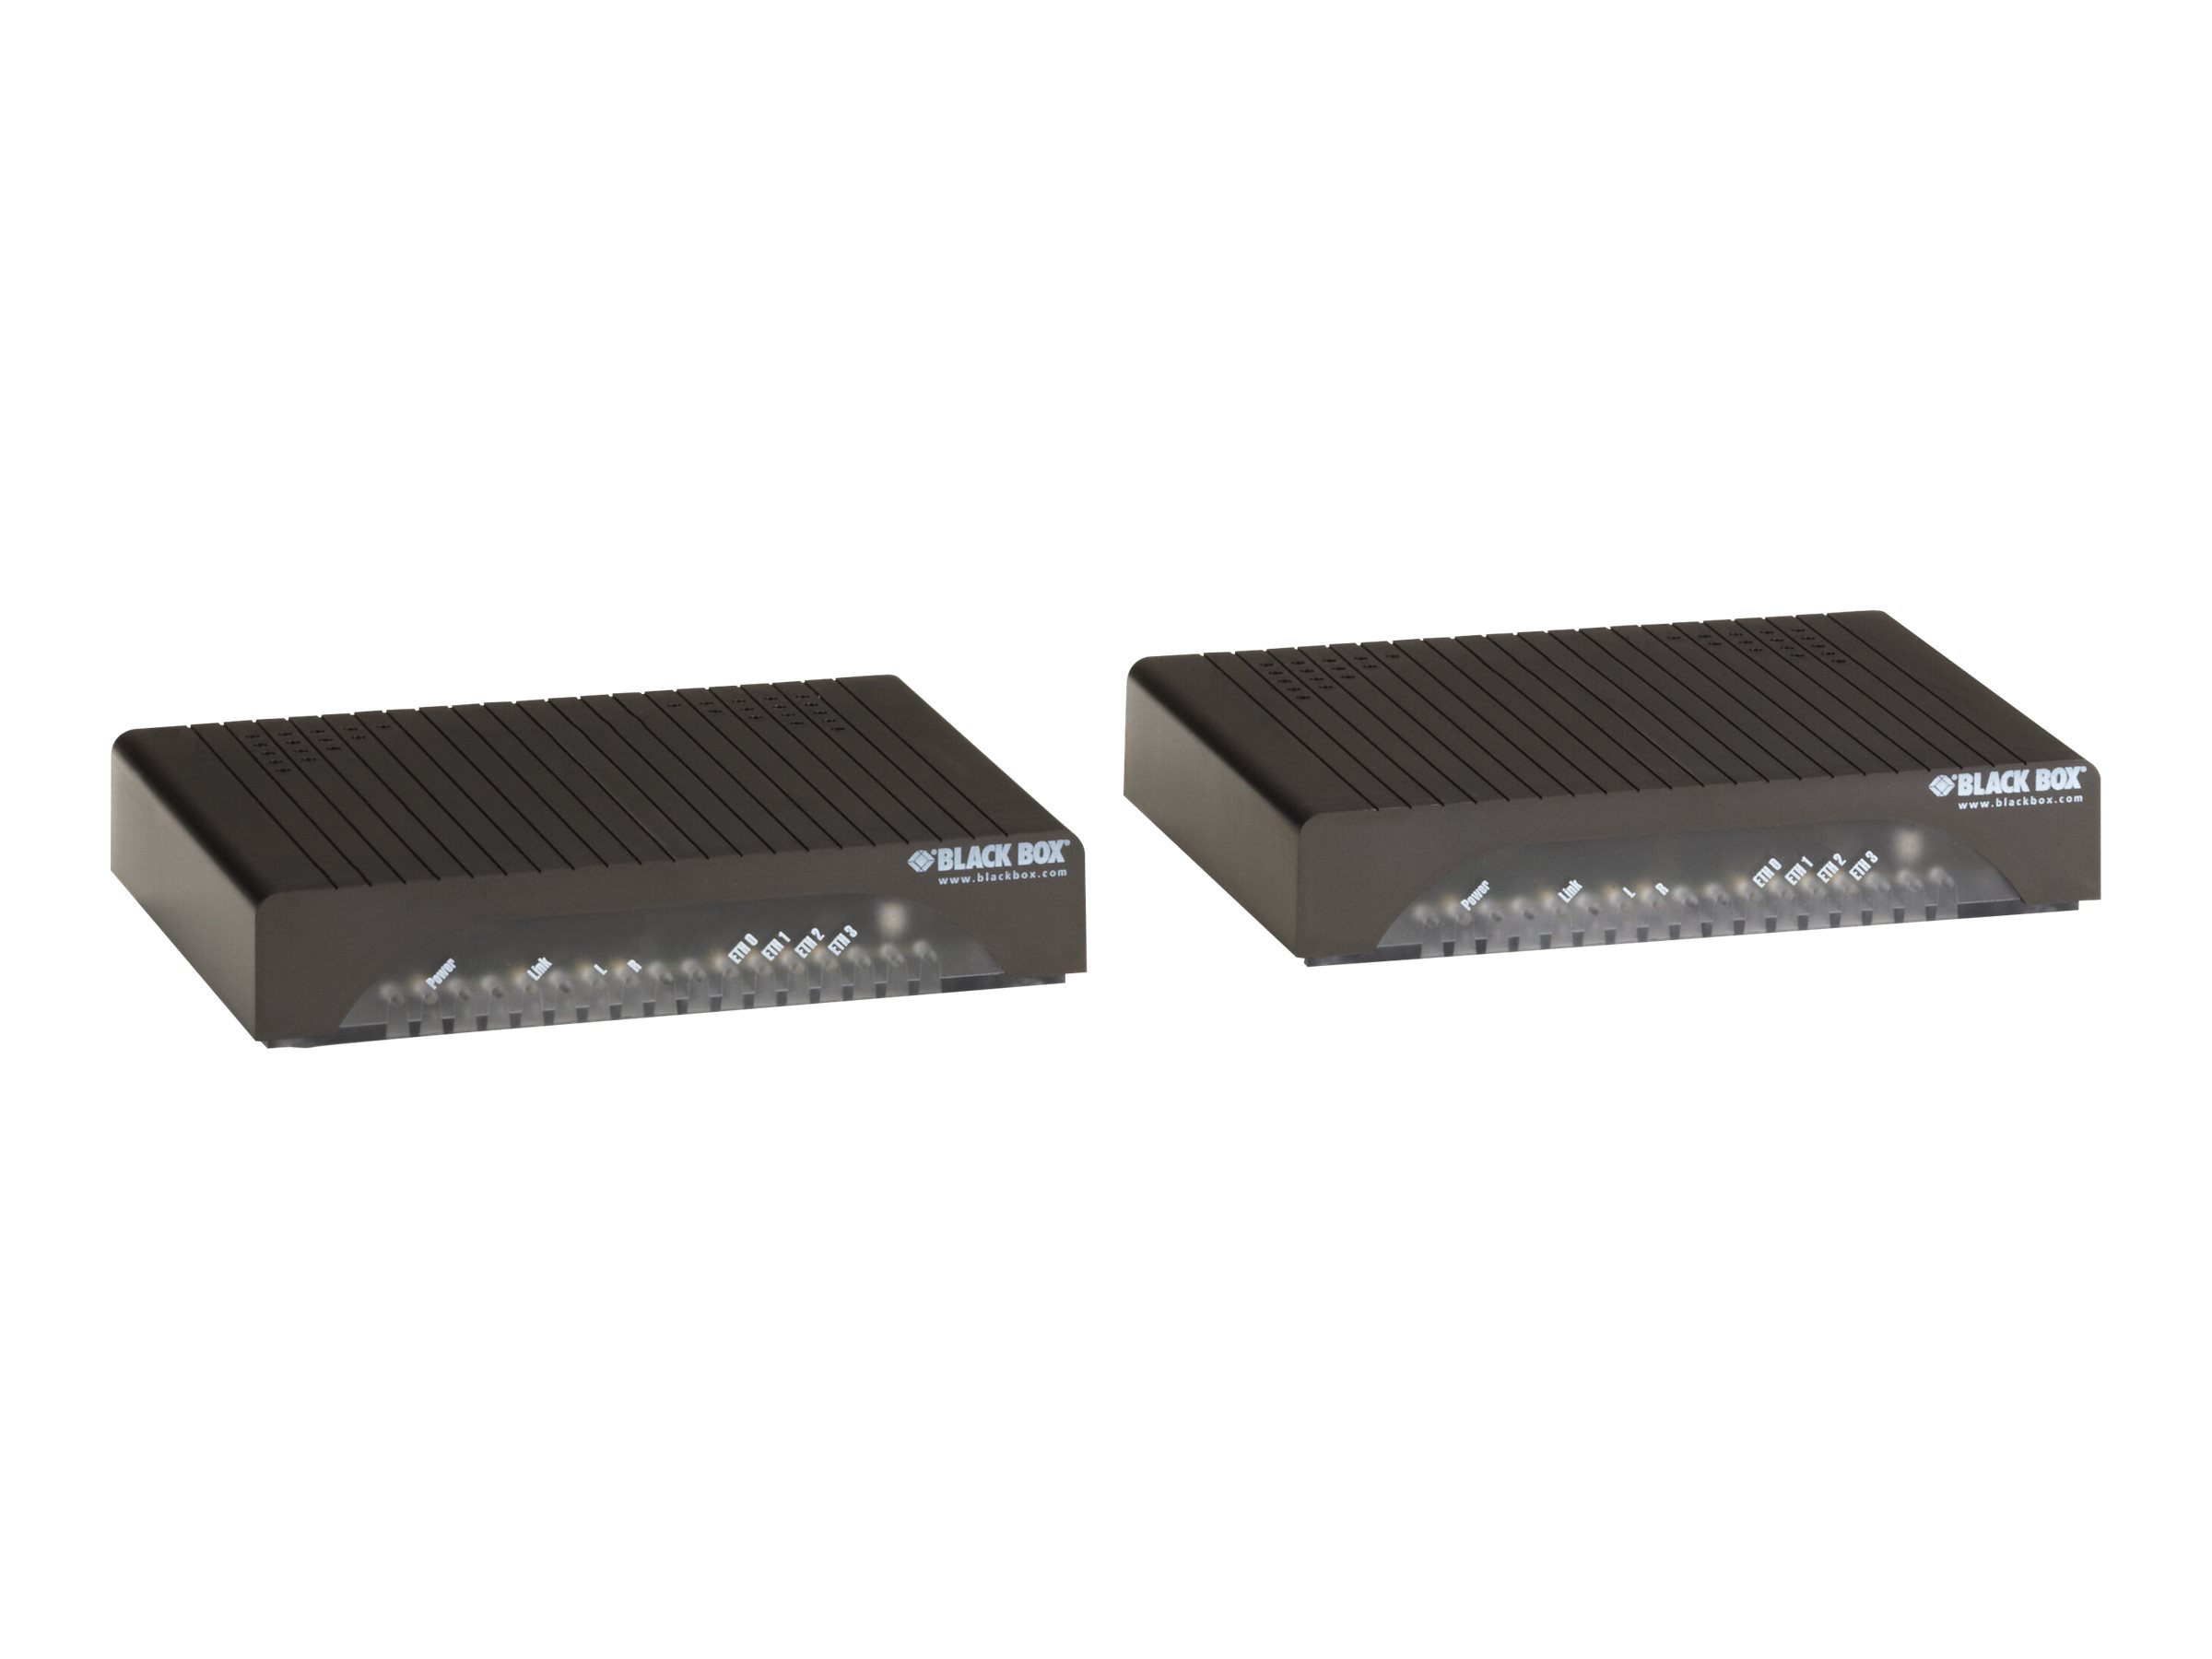 Black Box High-Speed Ethernet Extender Kit